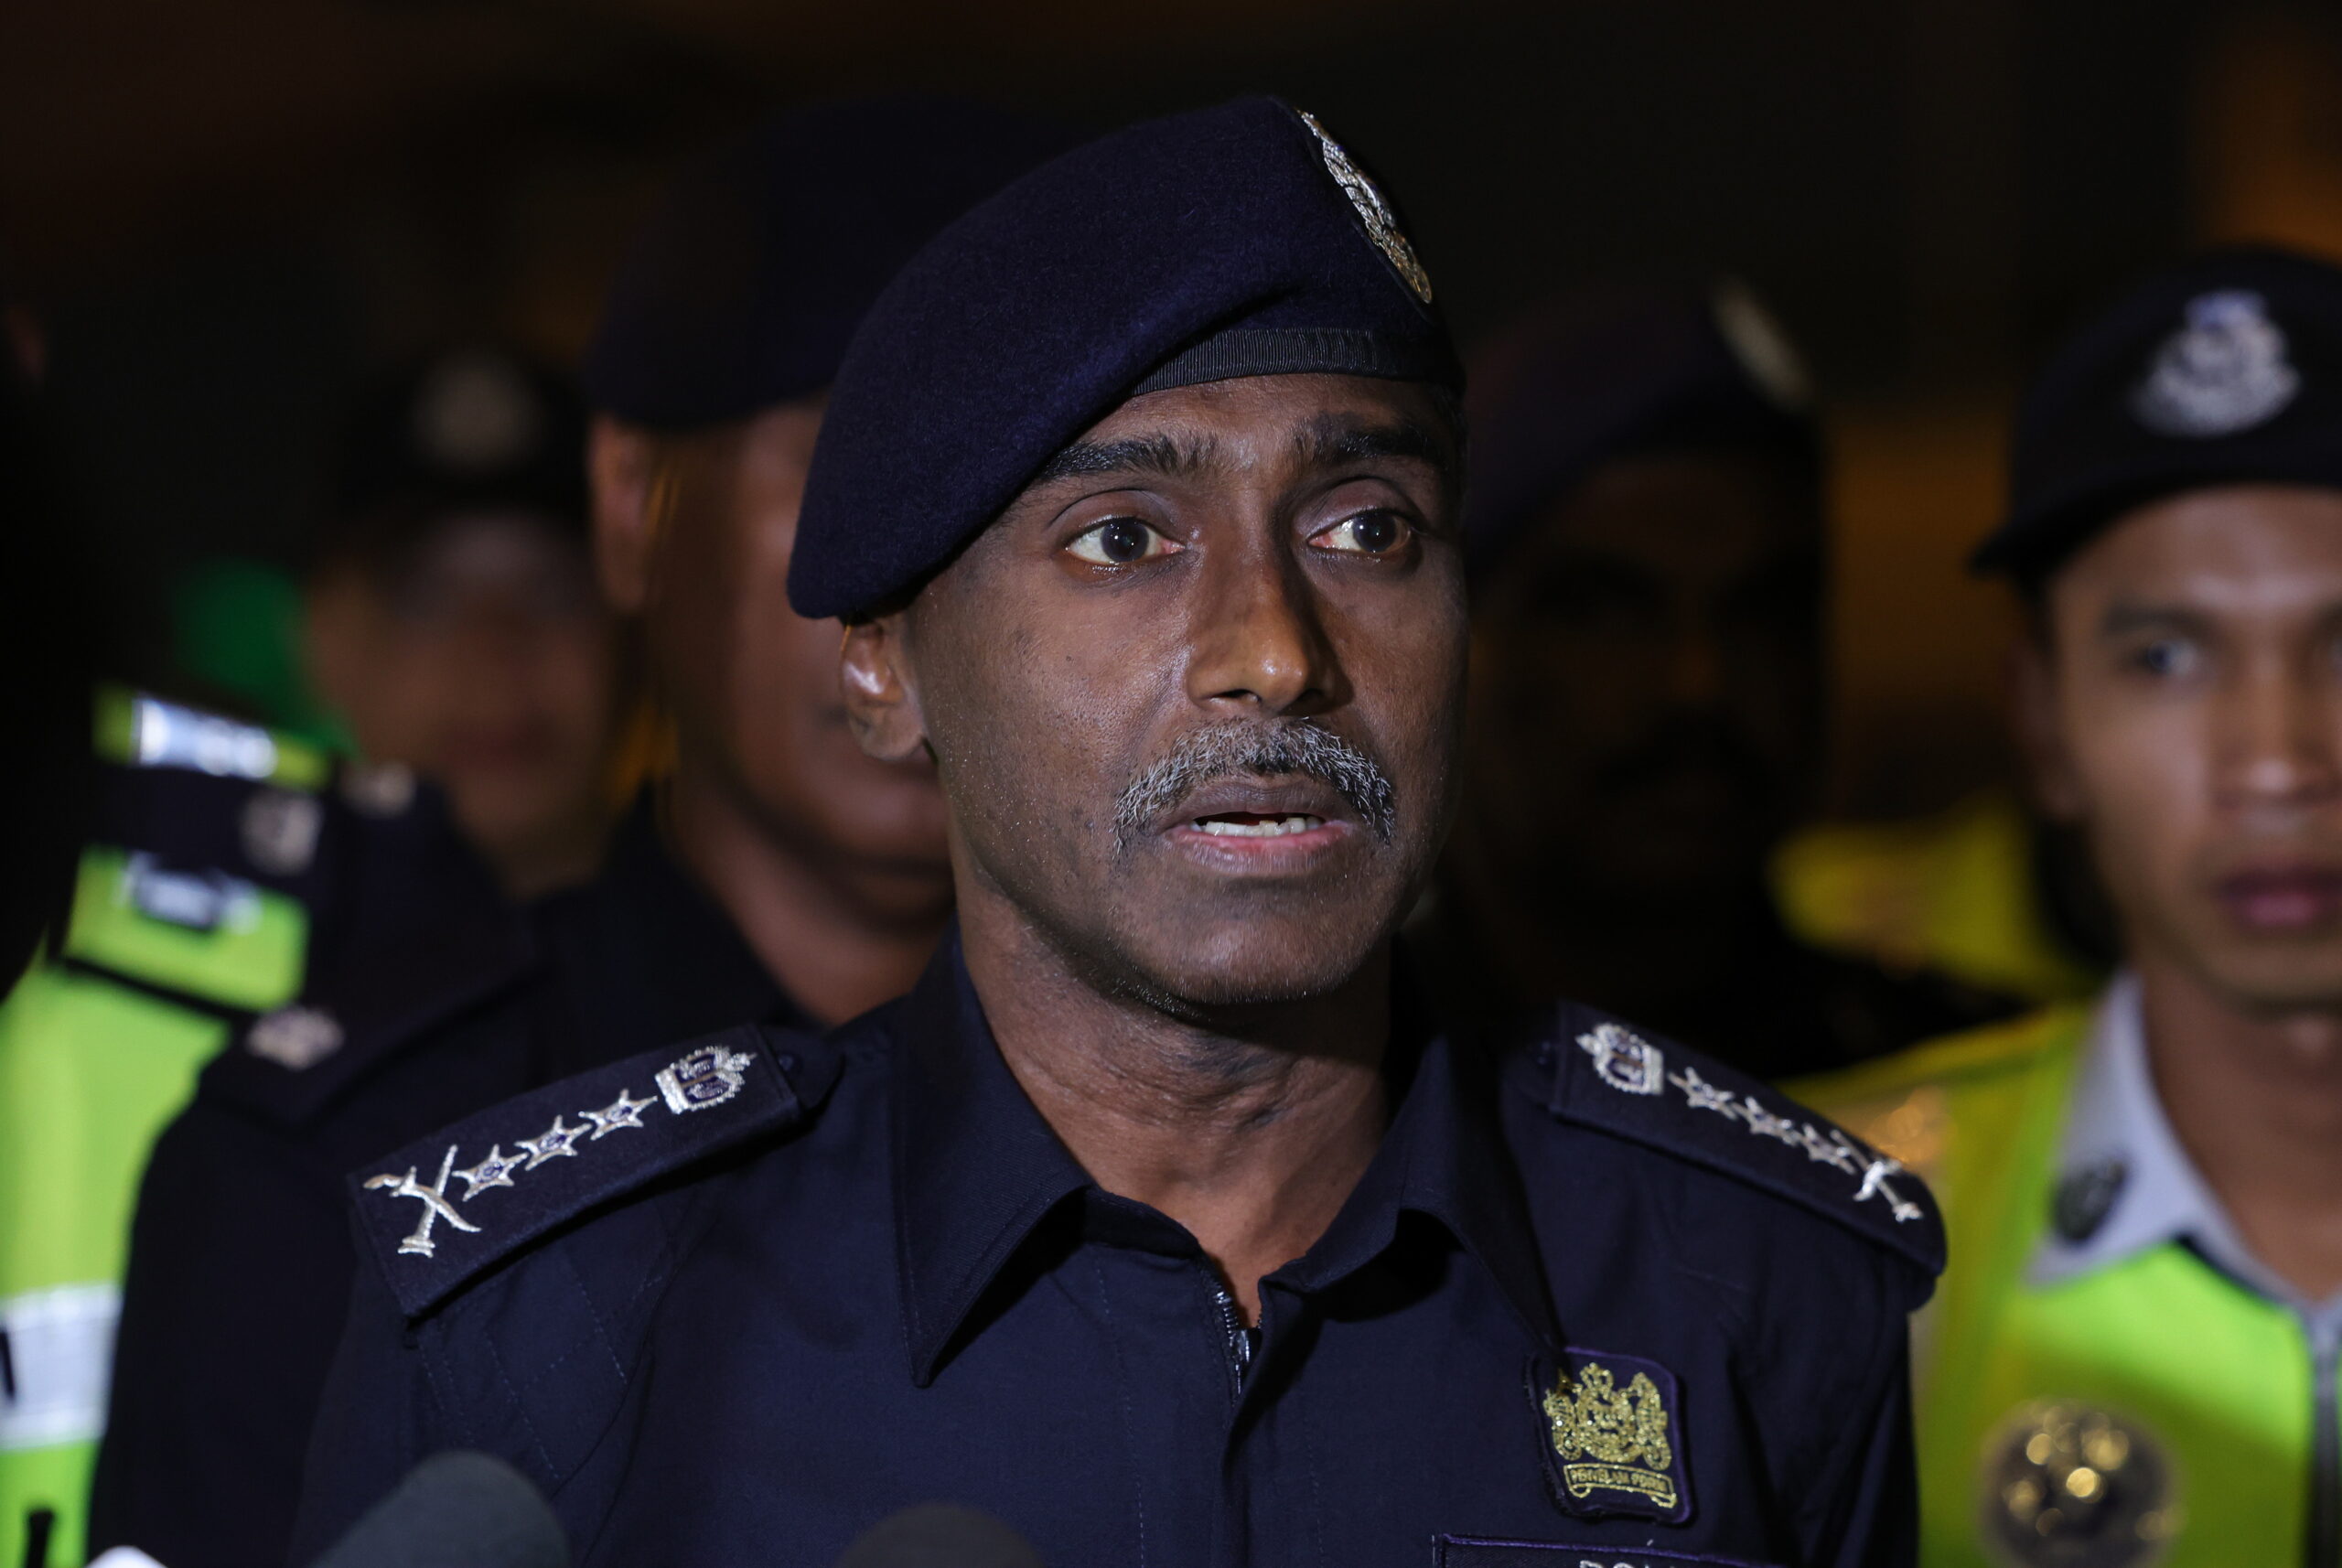 Ketua Polis Johor terima ancaman bom